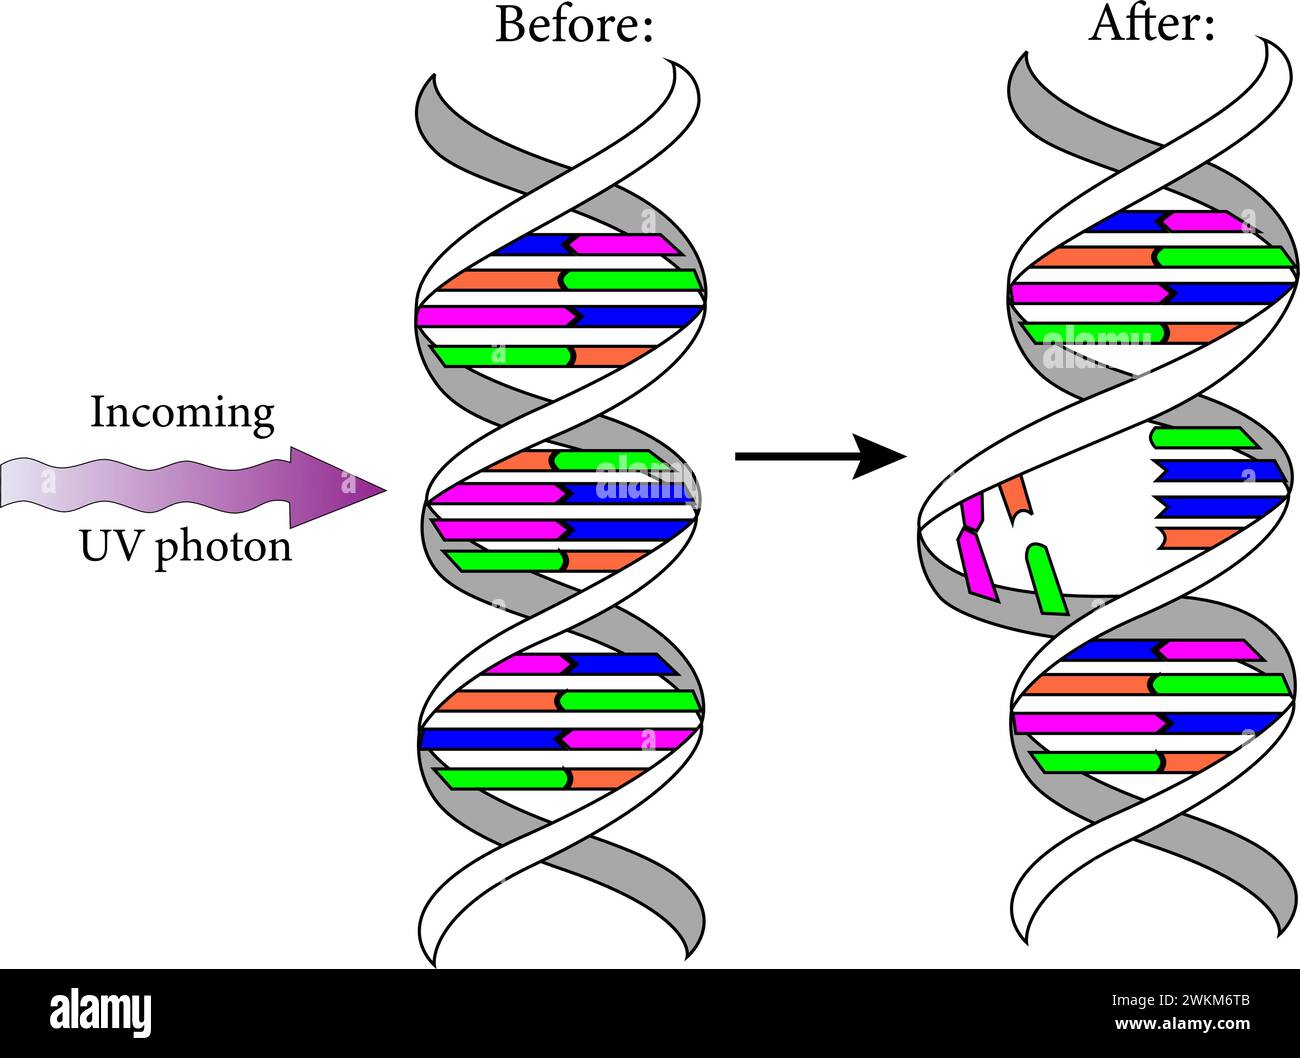 Diagramm, das die ultravioletten Photonen zeigt, schädigen die DNA-Moleküle lebender Organismen auf unterschiedliche Weise.Vektor-Illustration. Stock Vektor